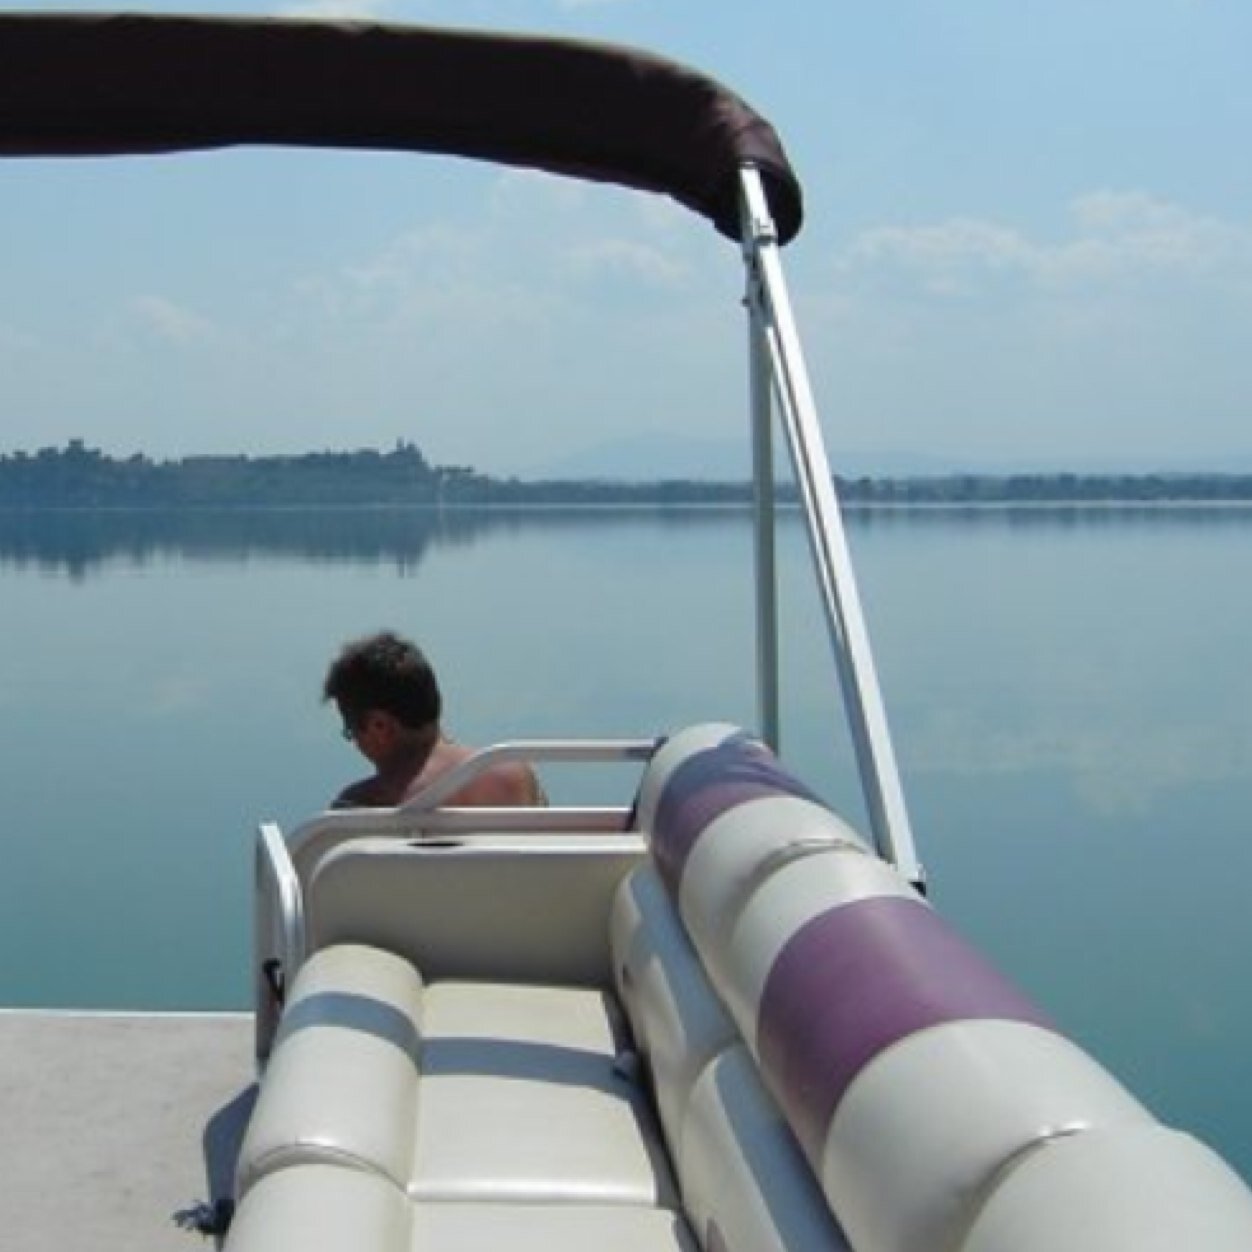 tour turistici sul lago #Trasimeno #navilagando #trasimenolake #trasimenocruises #boat #lake #umbria #enjoythecommunity #trasimenoboats